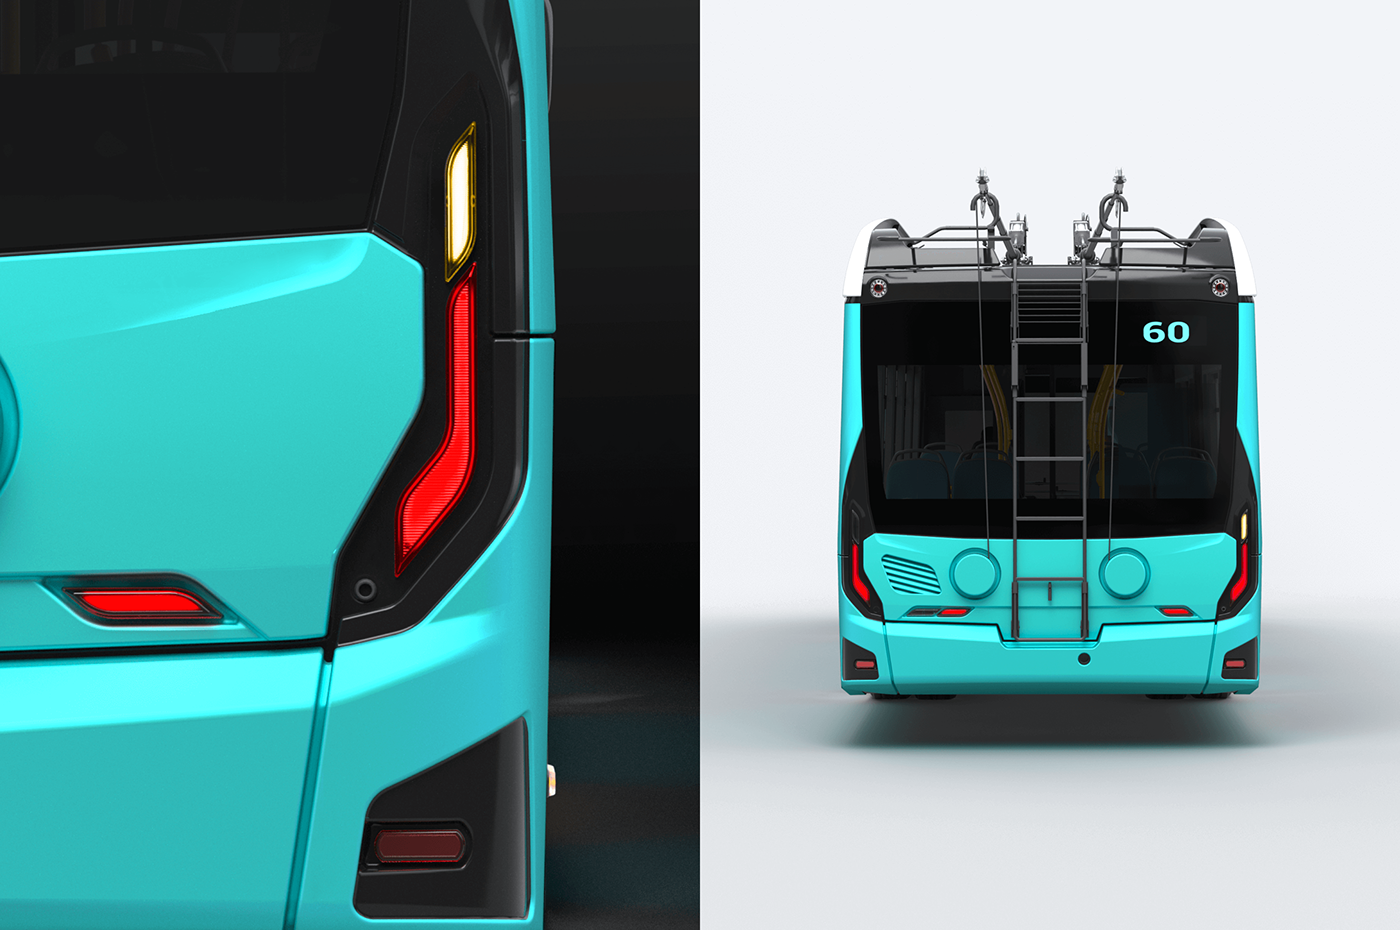 design Engineering  industrial design  product design  sketch Transportation Design bus transportation public transportation industrial